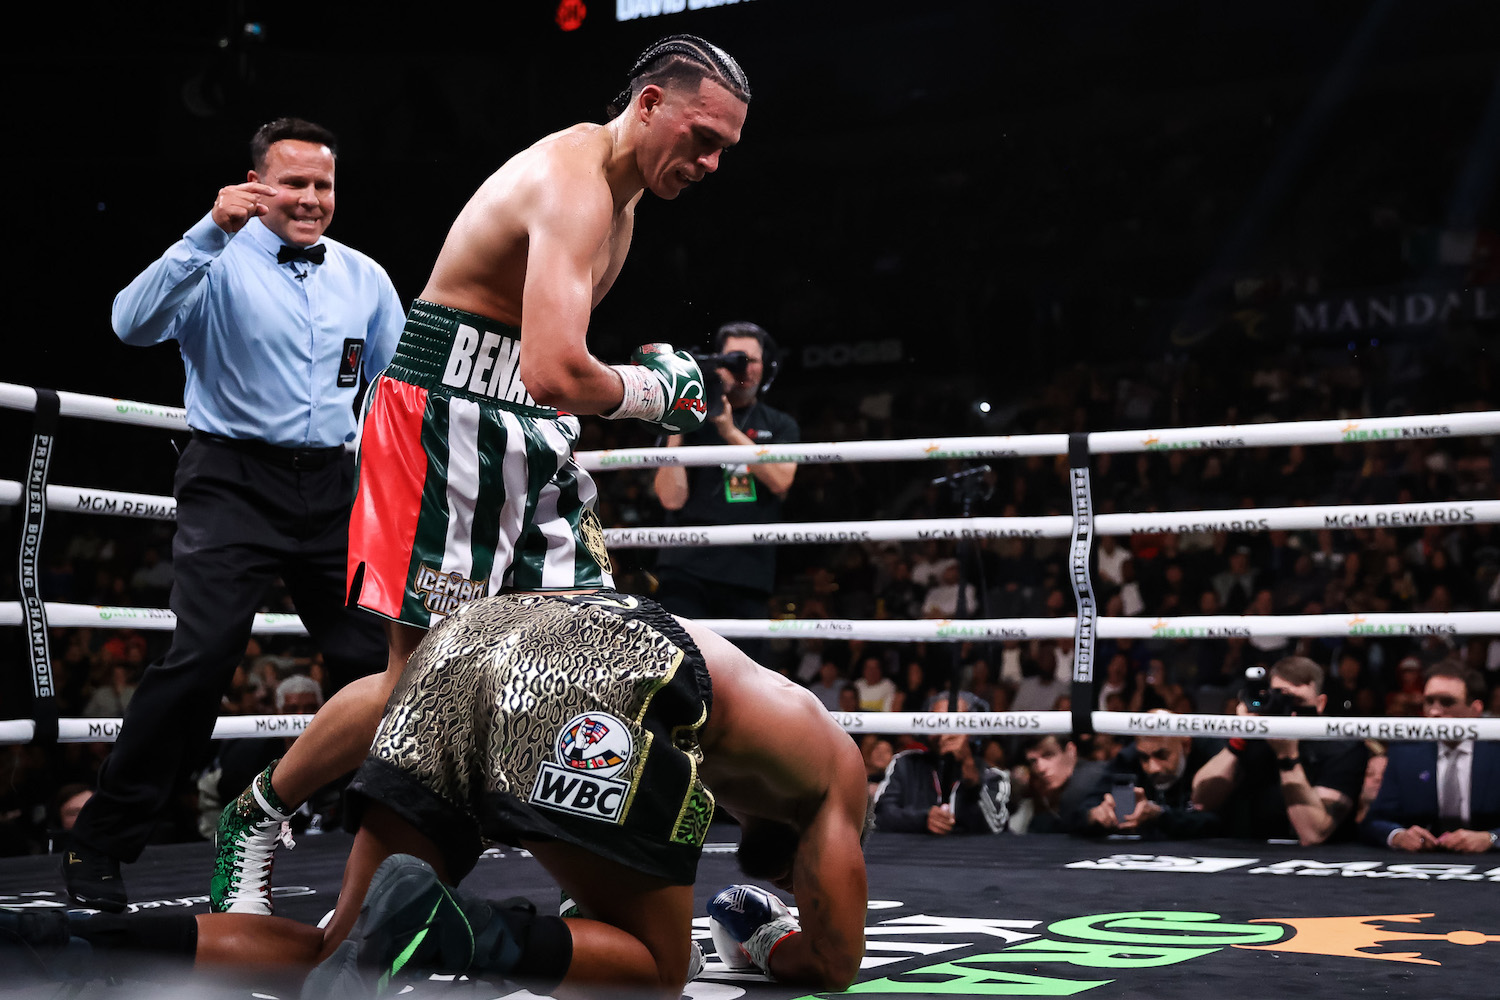 Benavidez entra en el territorio del boxeador del año con su contundente victoria sobre Andrade